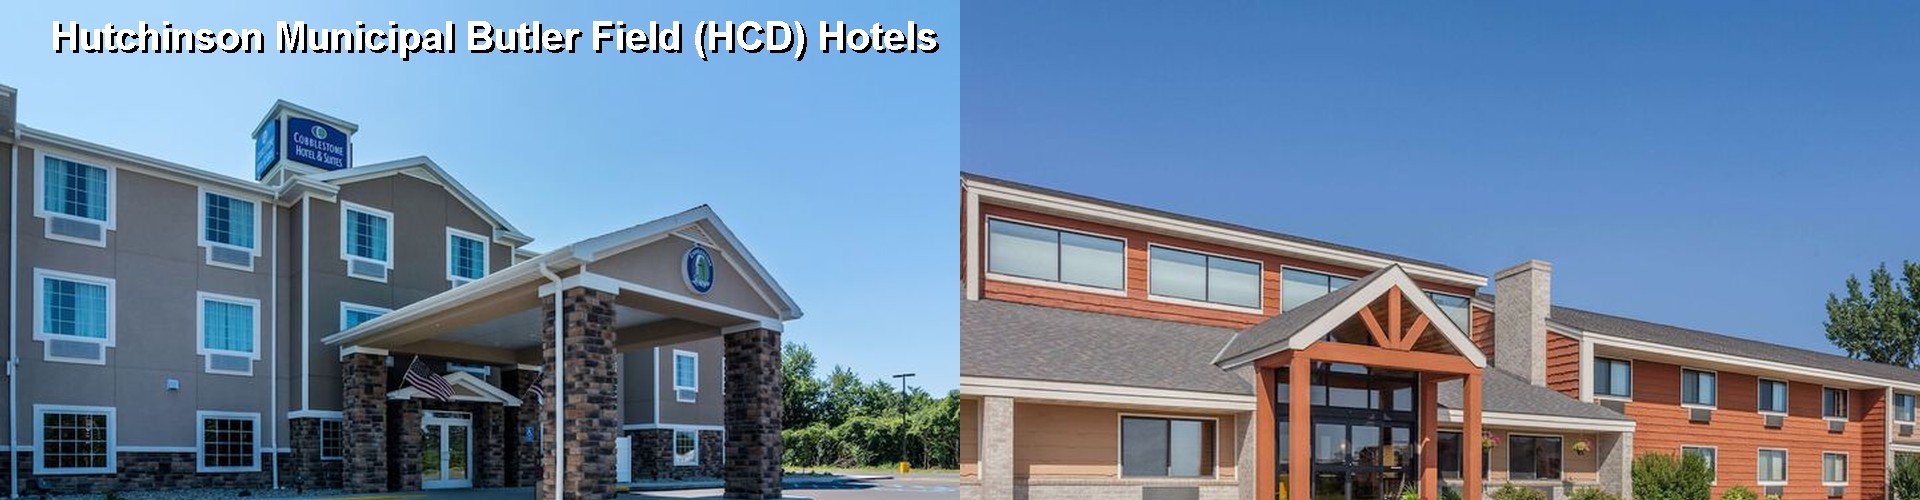 5 Best Hotels near Hutchinson Municipal Butler Field (HCD)